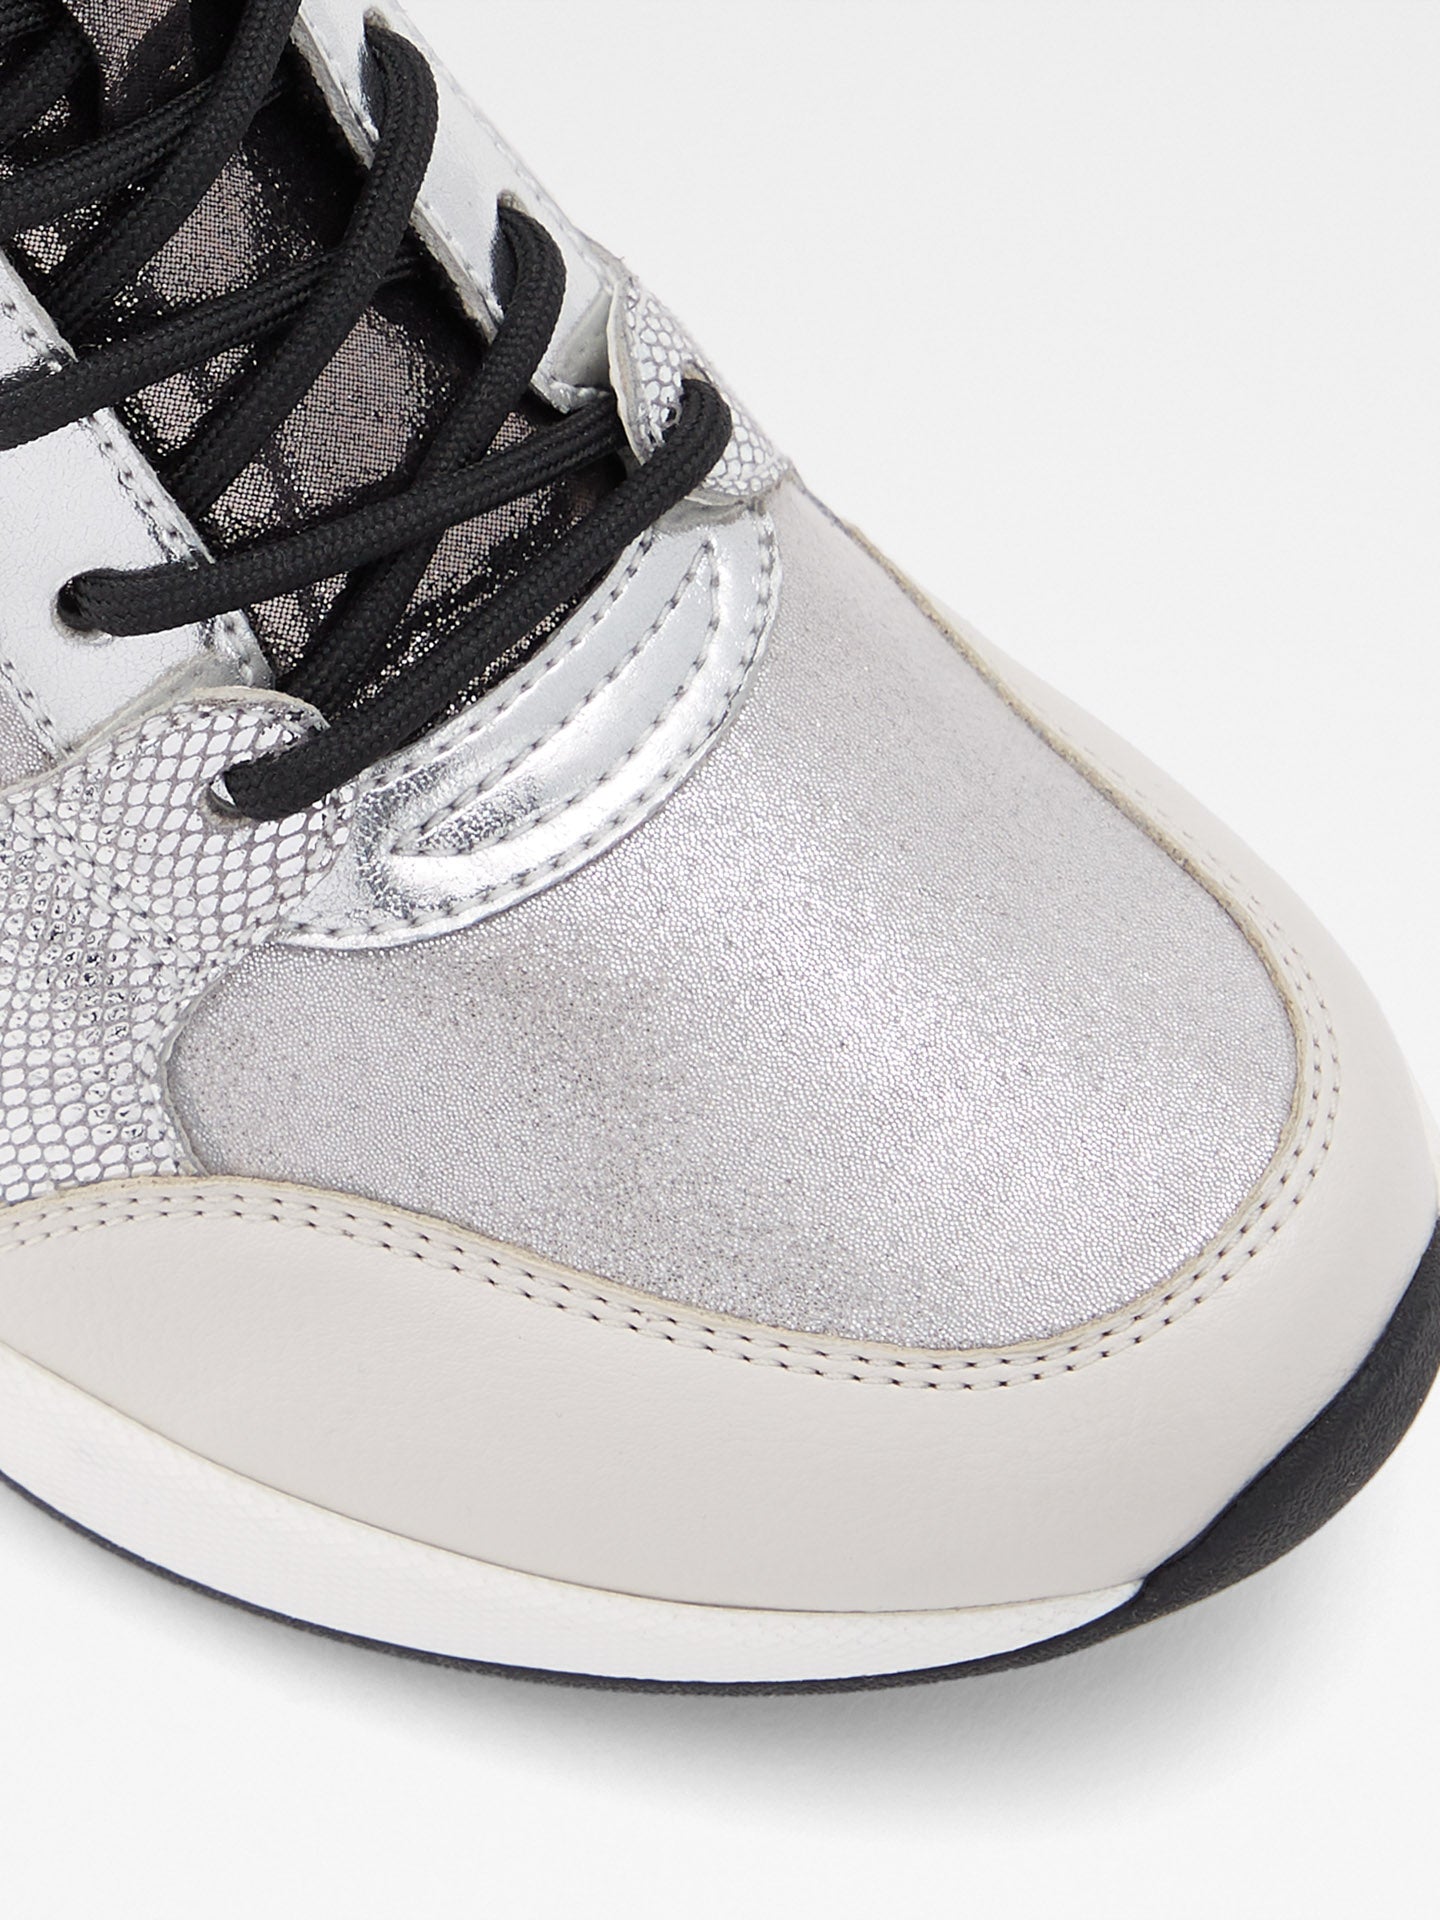 aldo gray shoes